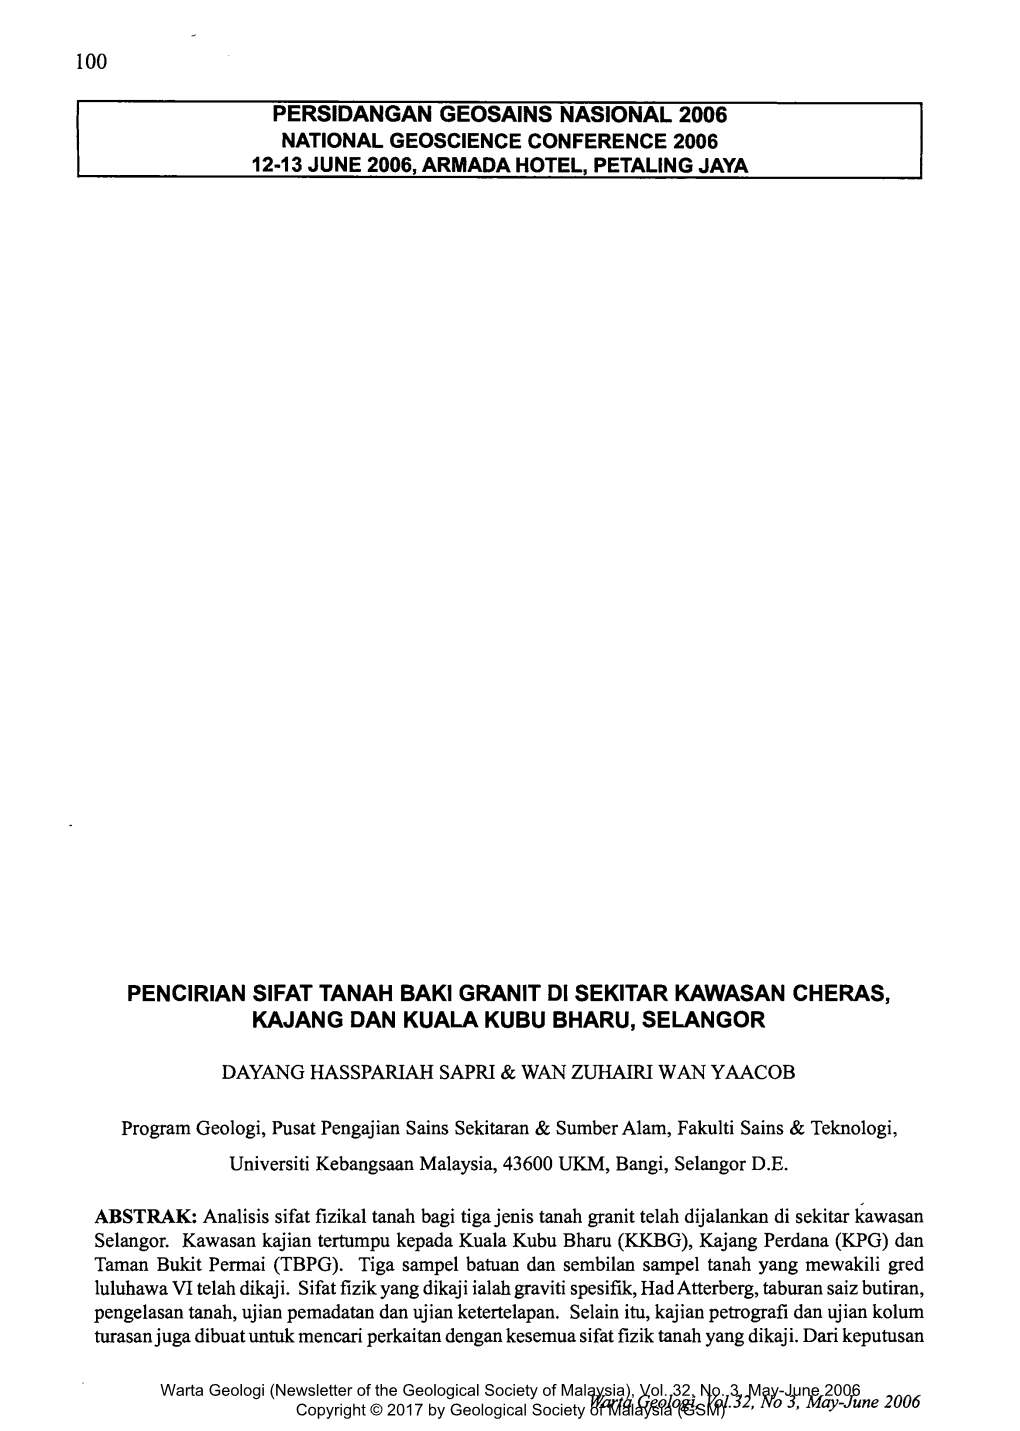 Pencirian Sifat Tanah Baki Granit Di Sekitar Kawasan Cheras, Kajang Dan Kuala Kubu Bharu, Selangor